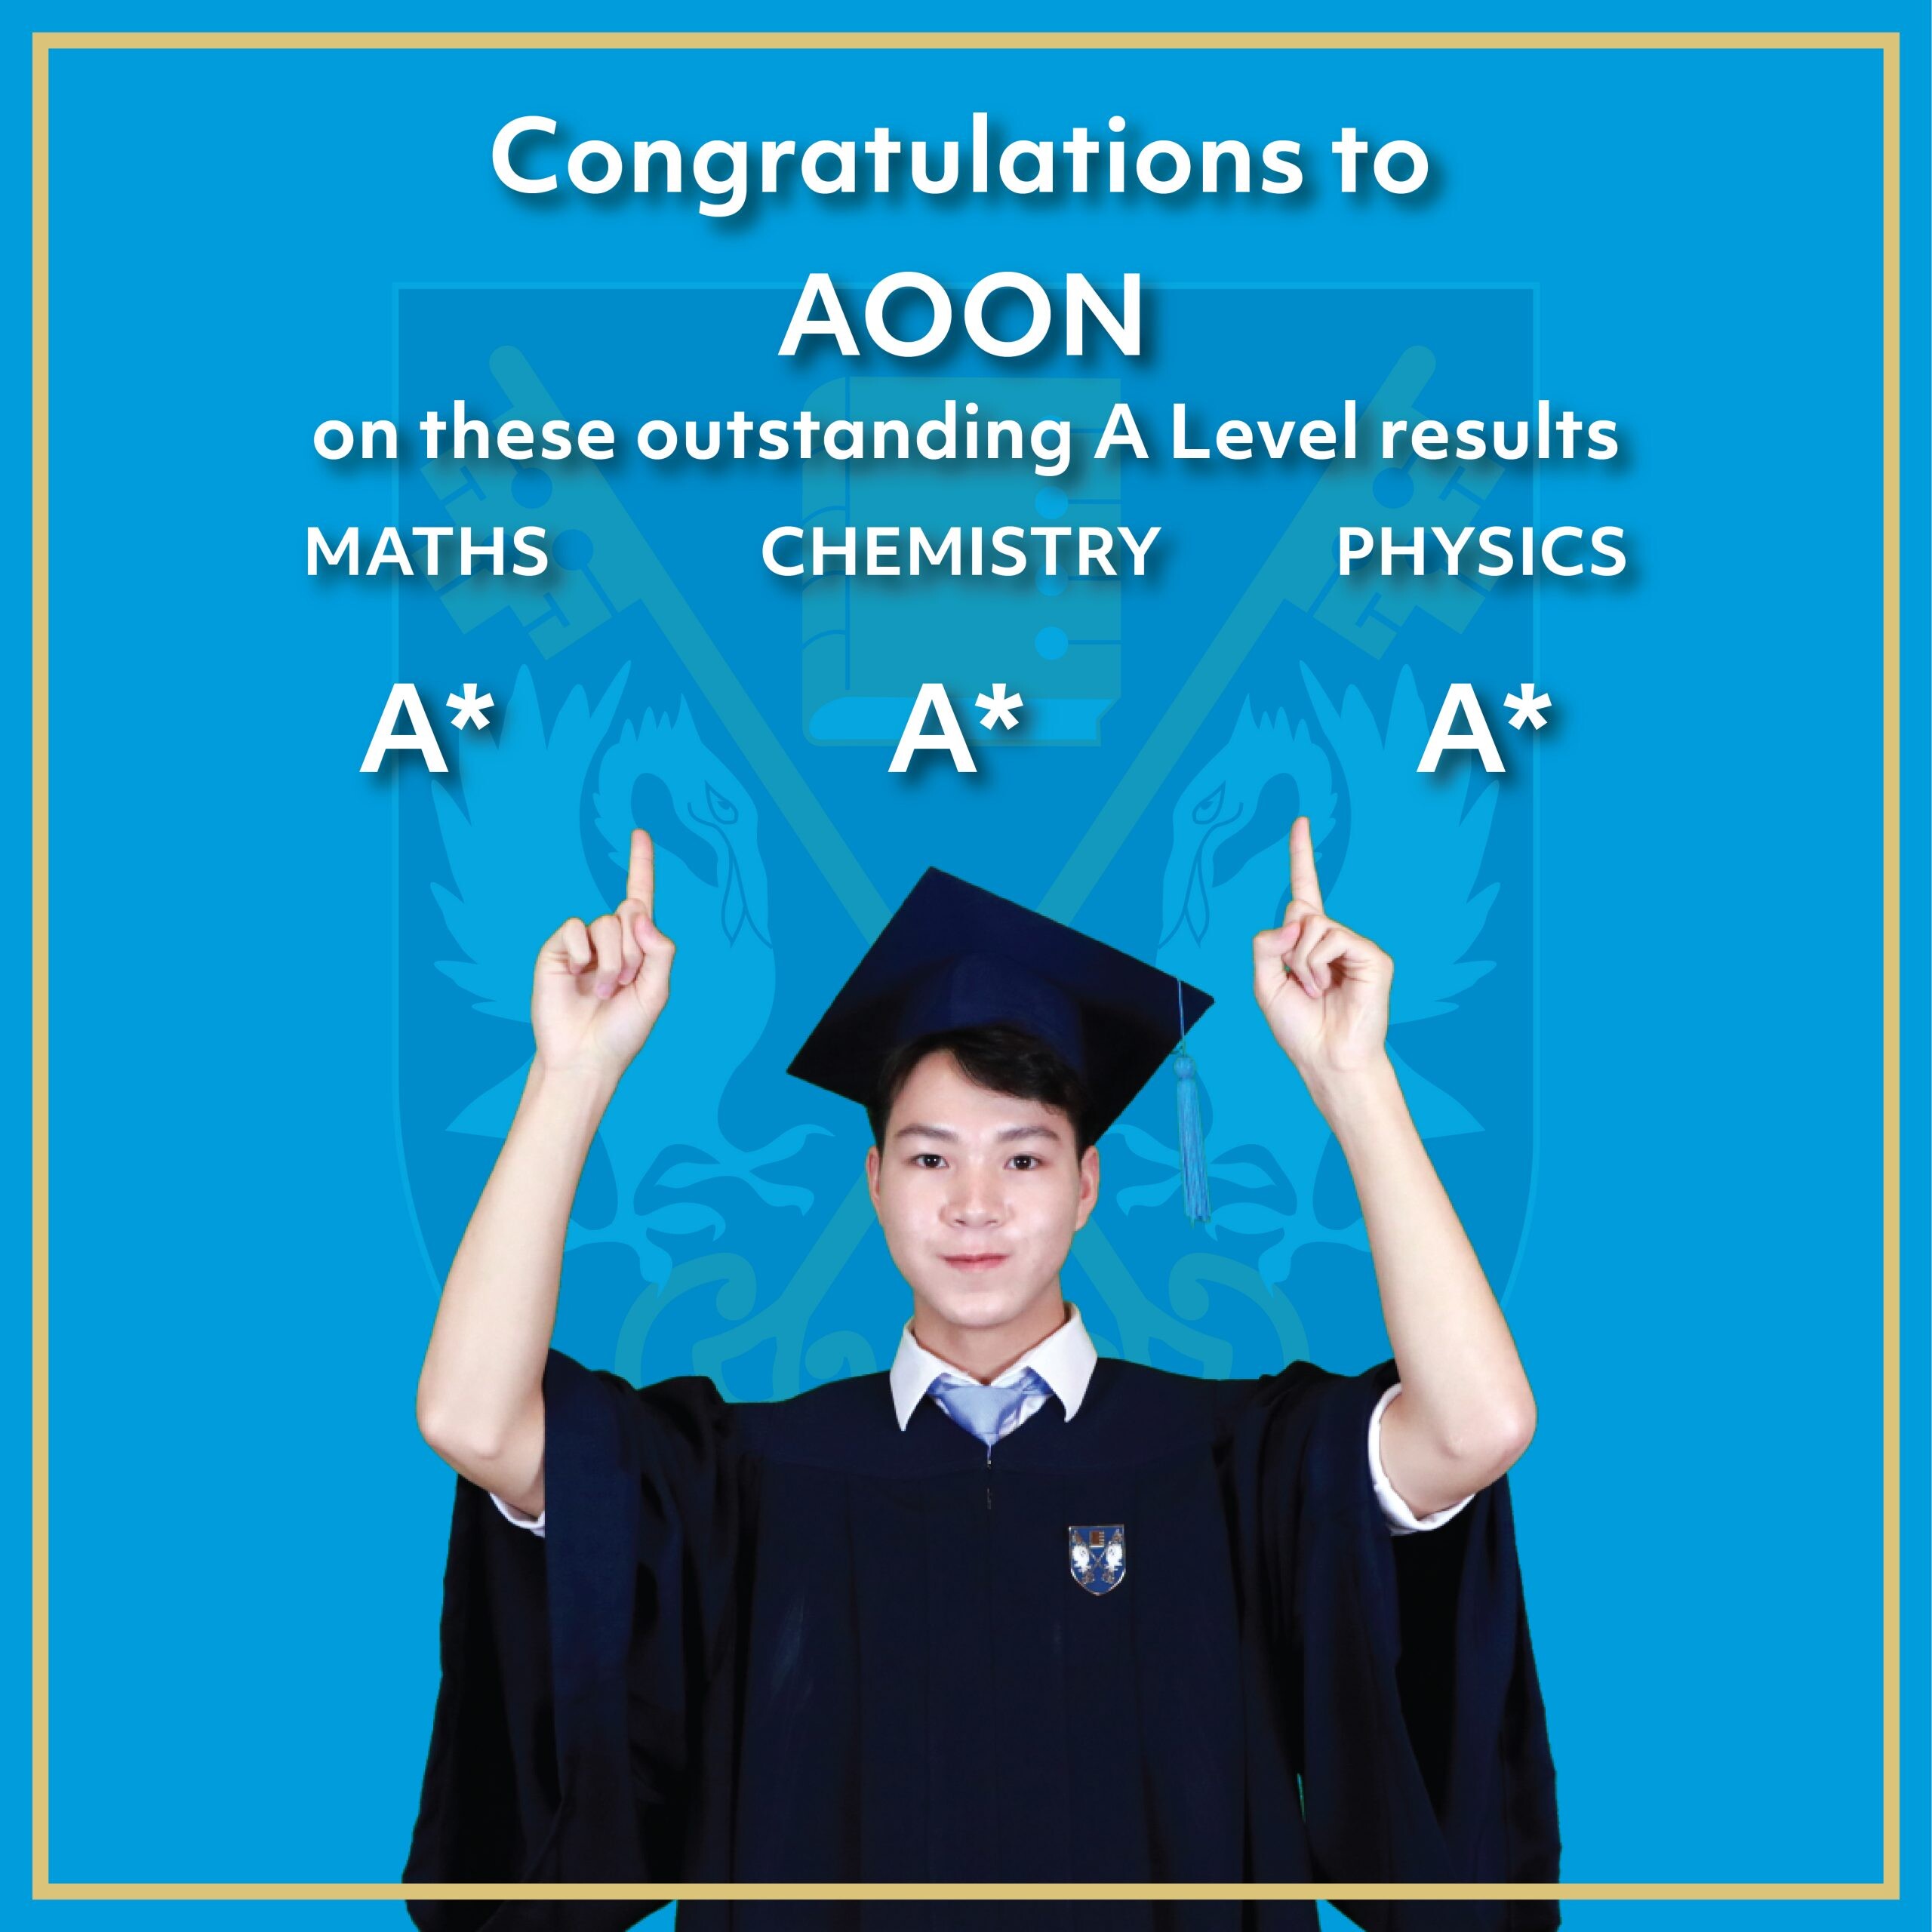 นักเรียนโรงเรียนนานาชาติ ไบรท์ตัน คอลเลจ กรุงเทพฯ  ทำผลสอบคะแนน A Level สูงสุดในประเทศไทย